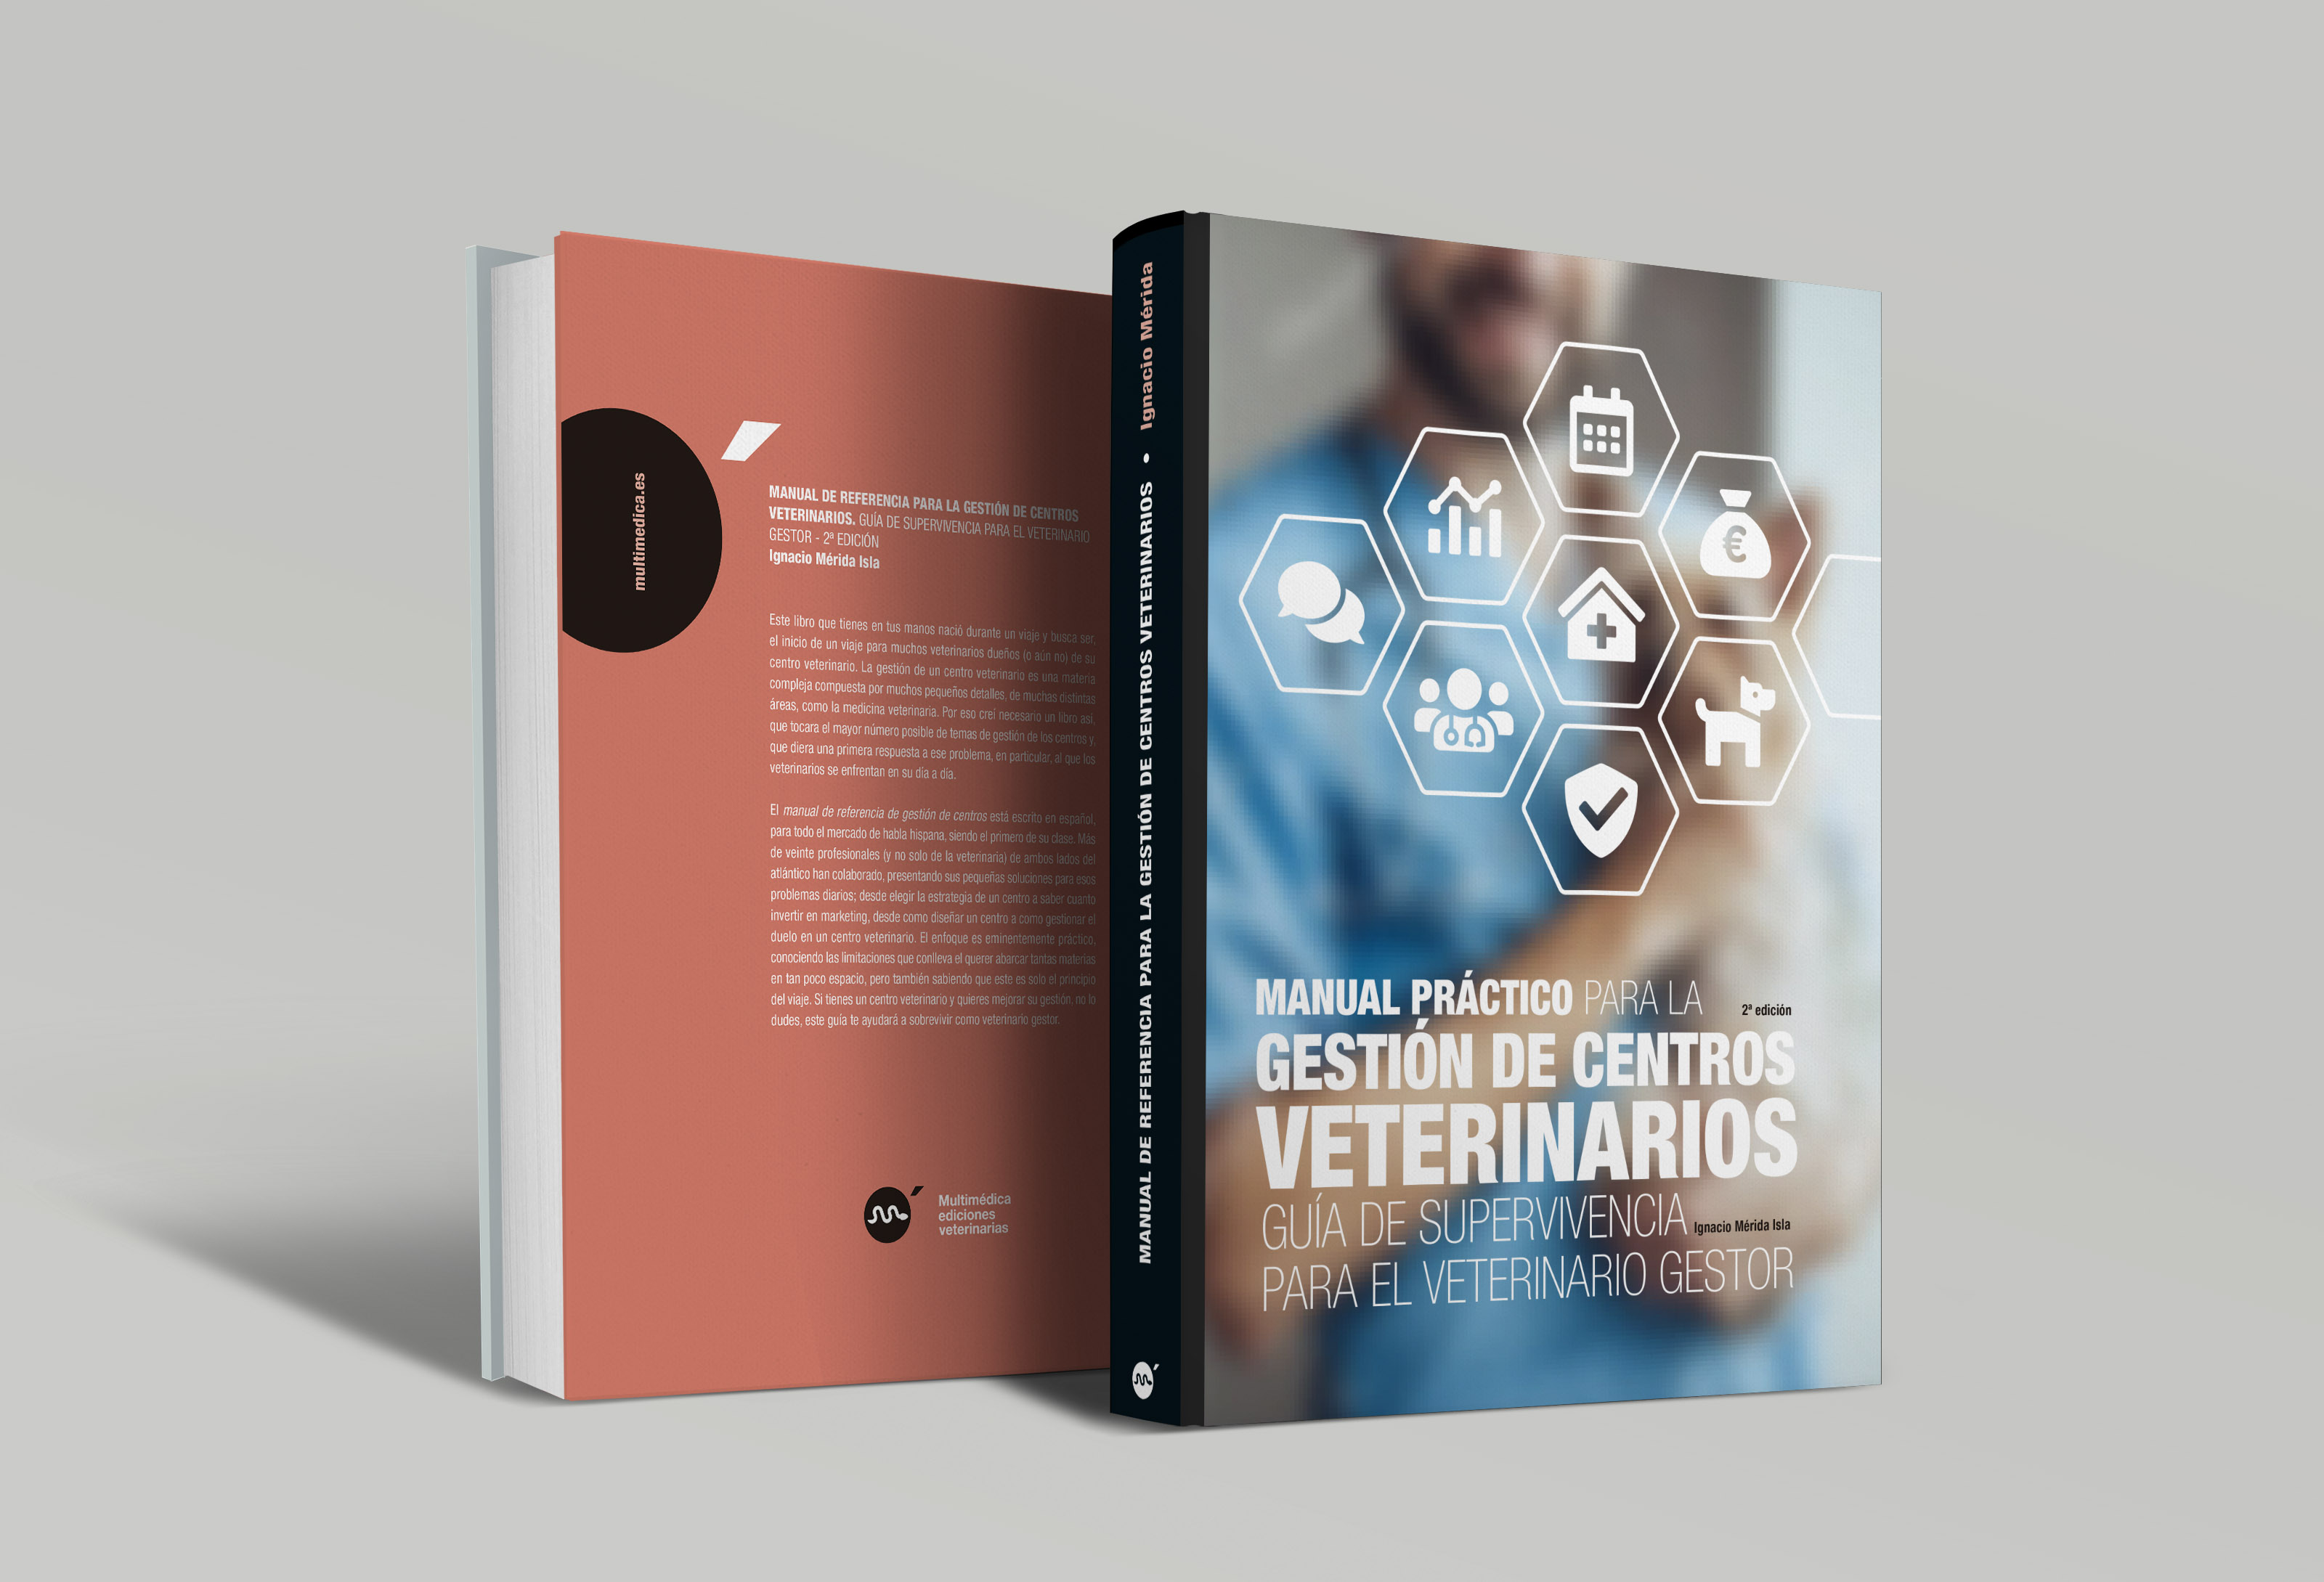 Manual Práctico para la Gestión de centros Veterinarios. Guía de Supervivencia para el Veterinario Gestor, 2ª Edición